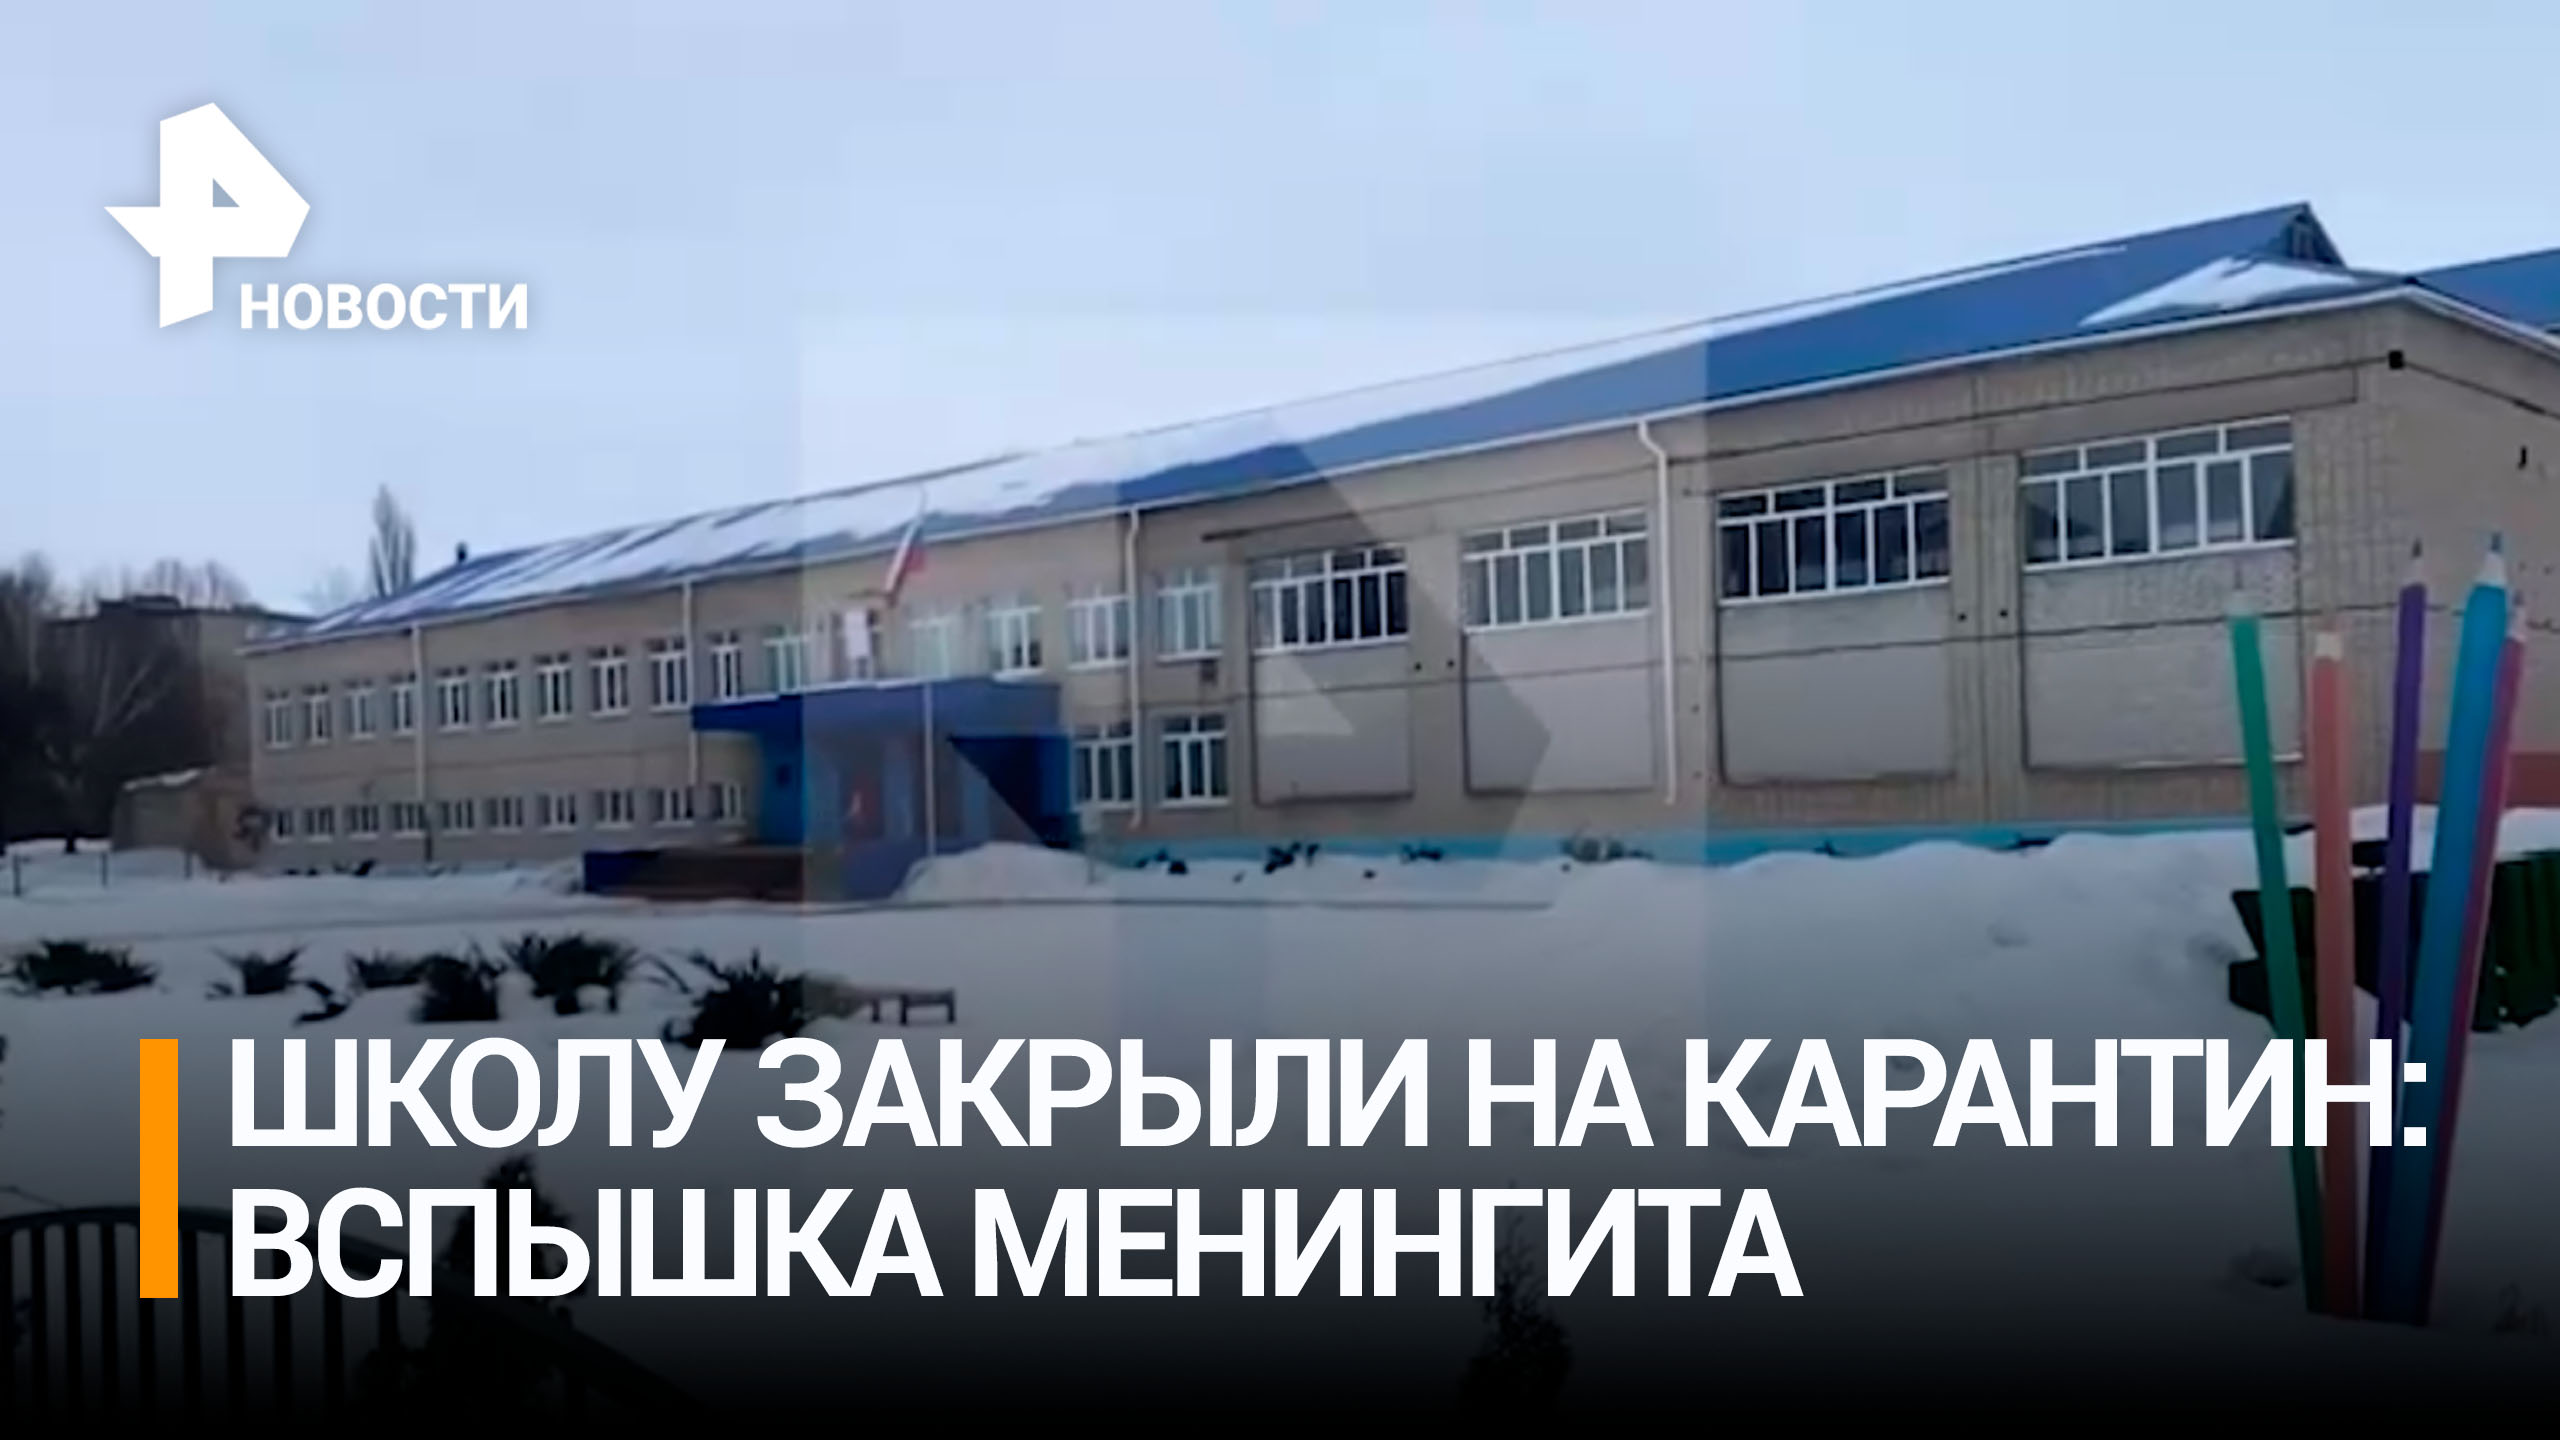 После вспышки менингита закрыли на карантин школу в Липецкой области